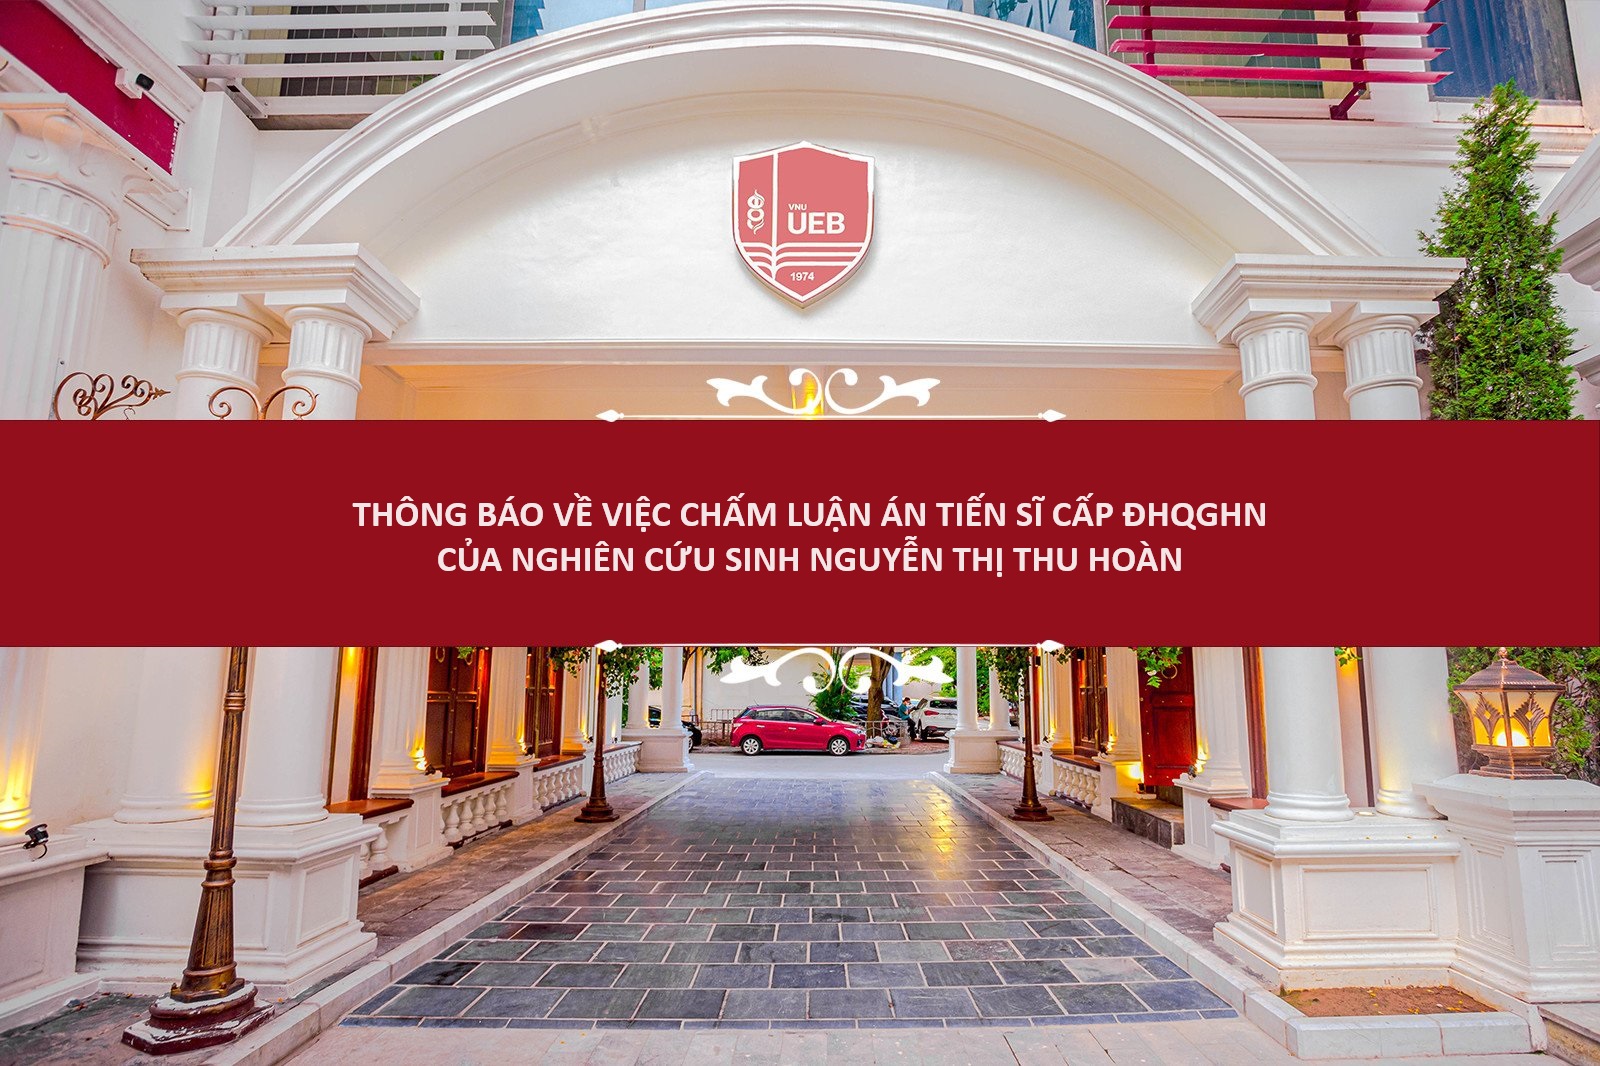 Thông báo về việc chấm luận án tiến sĩ nghiên cứu sinh Nguyễn Thị Thu Hoàn